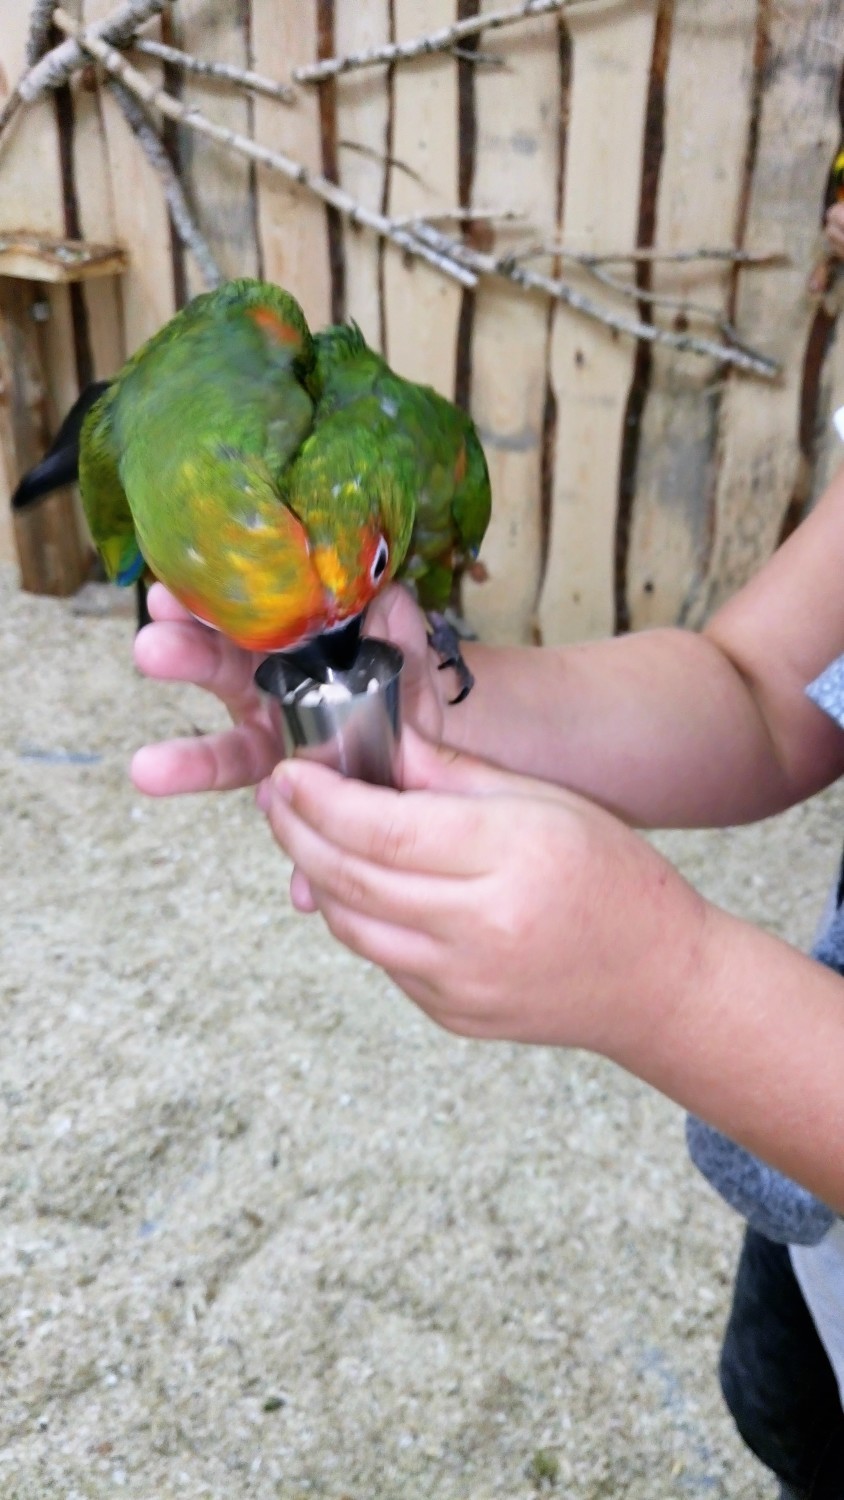 Papugarnia Rio bawi młodszych i starszych [ZDJĘCIA]